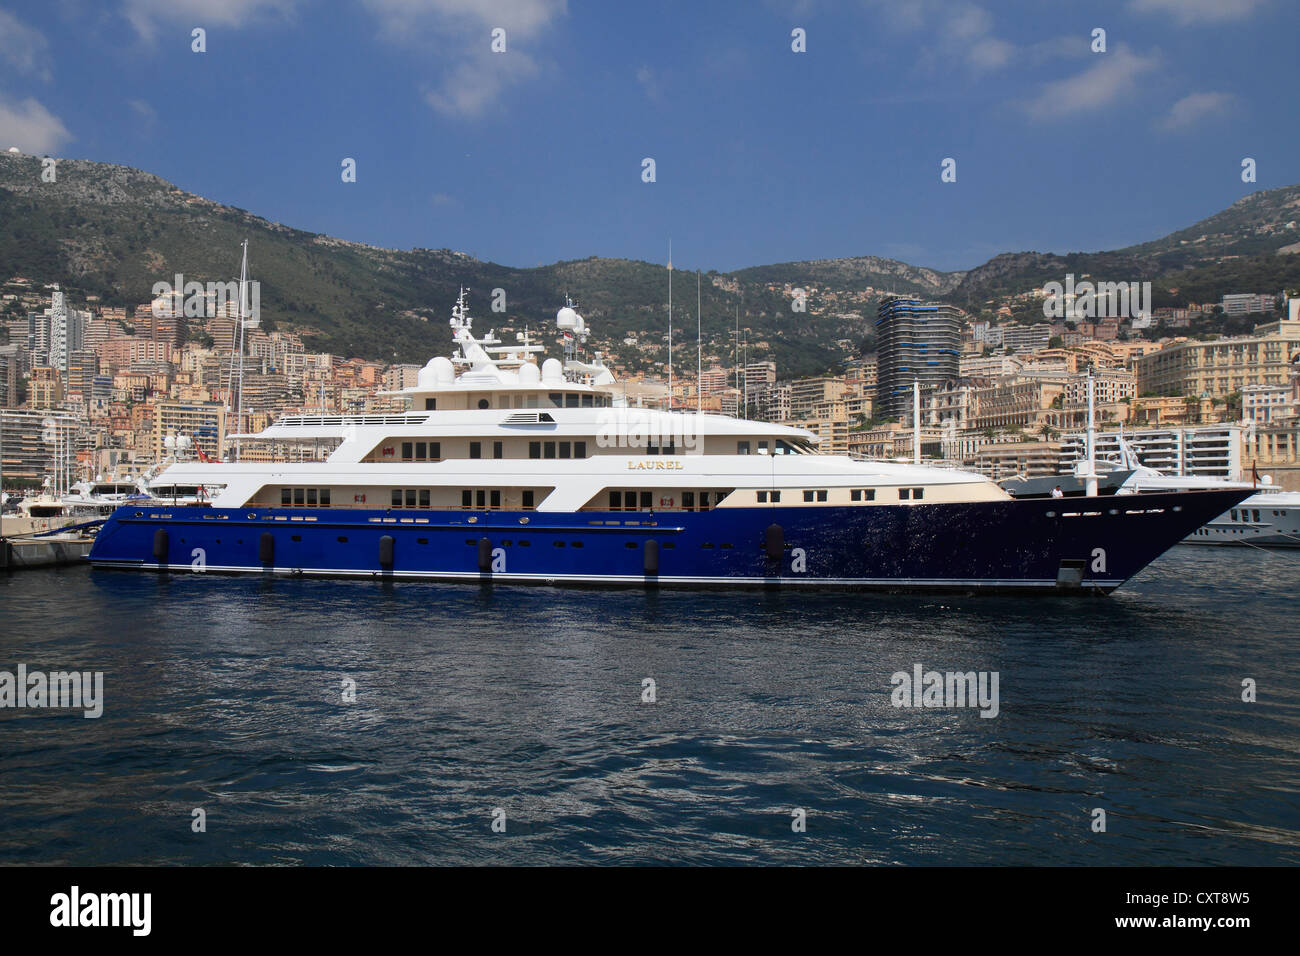 Laurel, un croiseur construit par Delta Marine, longueur : 73,15 mètres, construit en 2006, le Port Hercule, Principauté de Monaco Banque D'Images